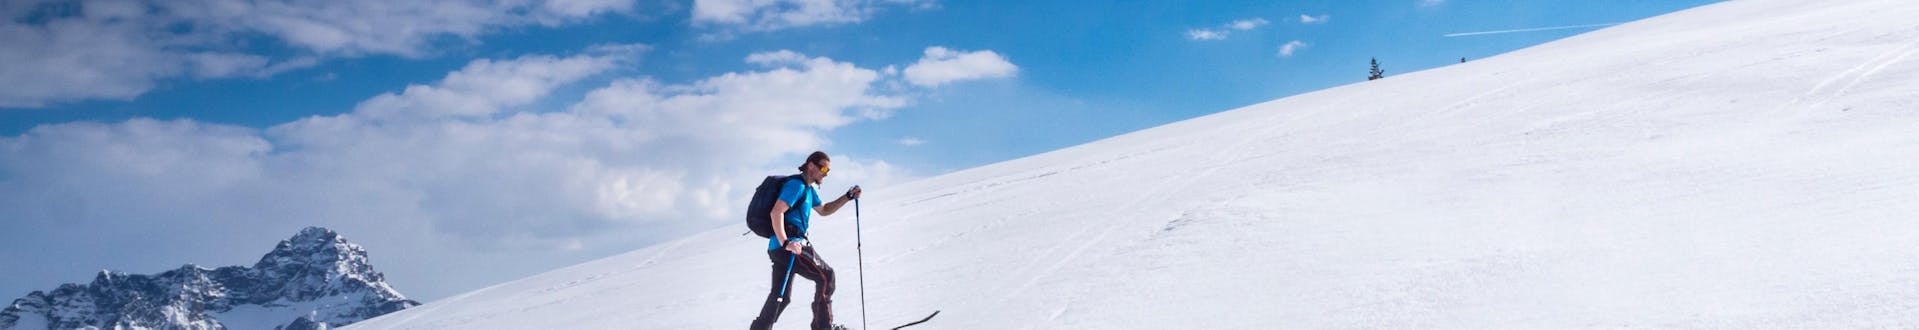 Ein Skitourengeher steigt an einem sonnigen Tag die Piste in Riezlern, Österreich, hinauf.